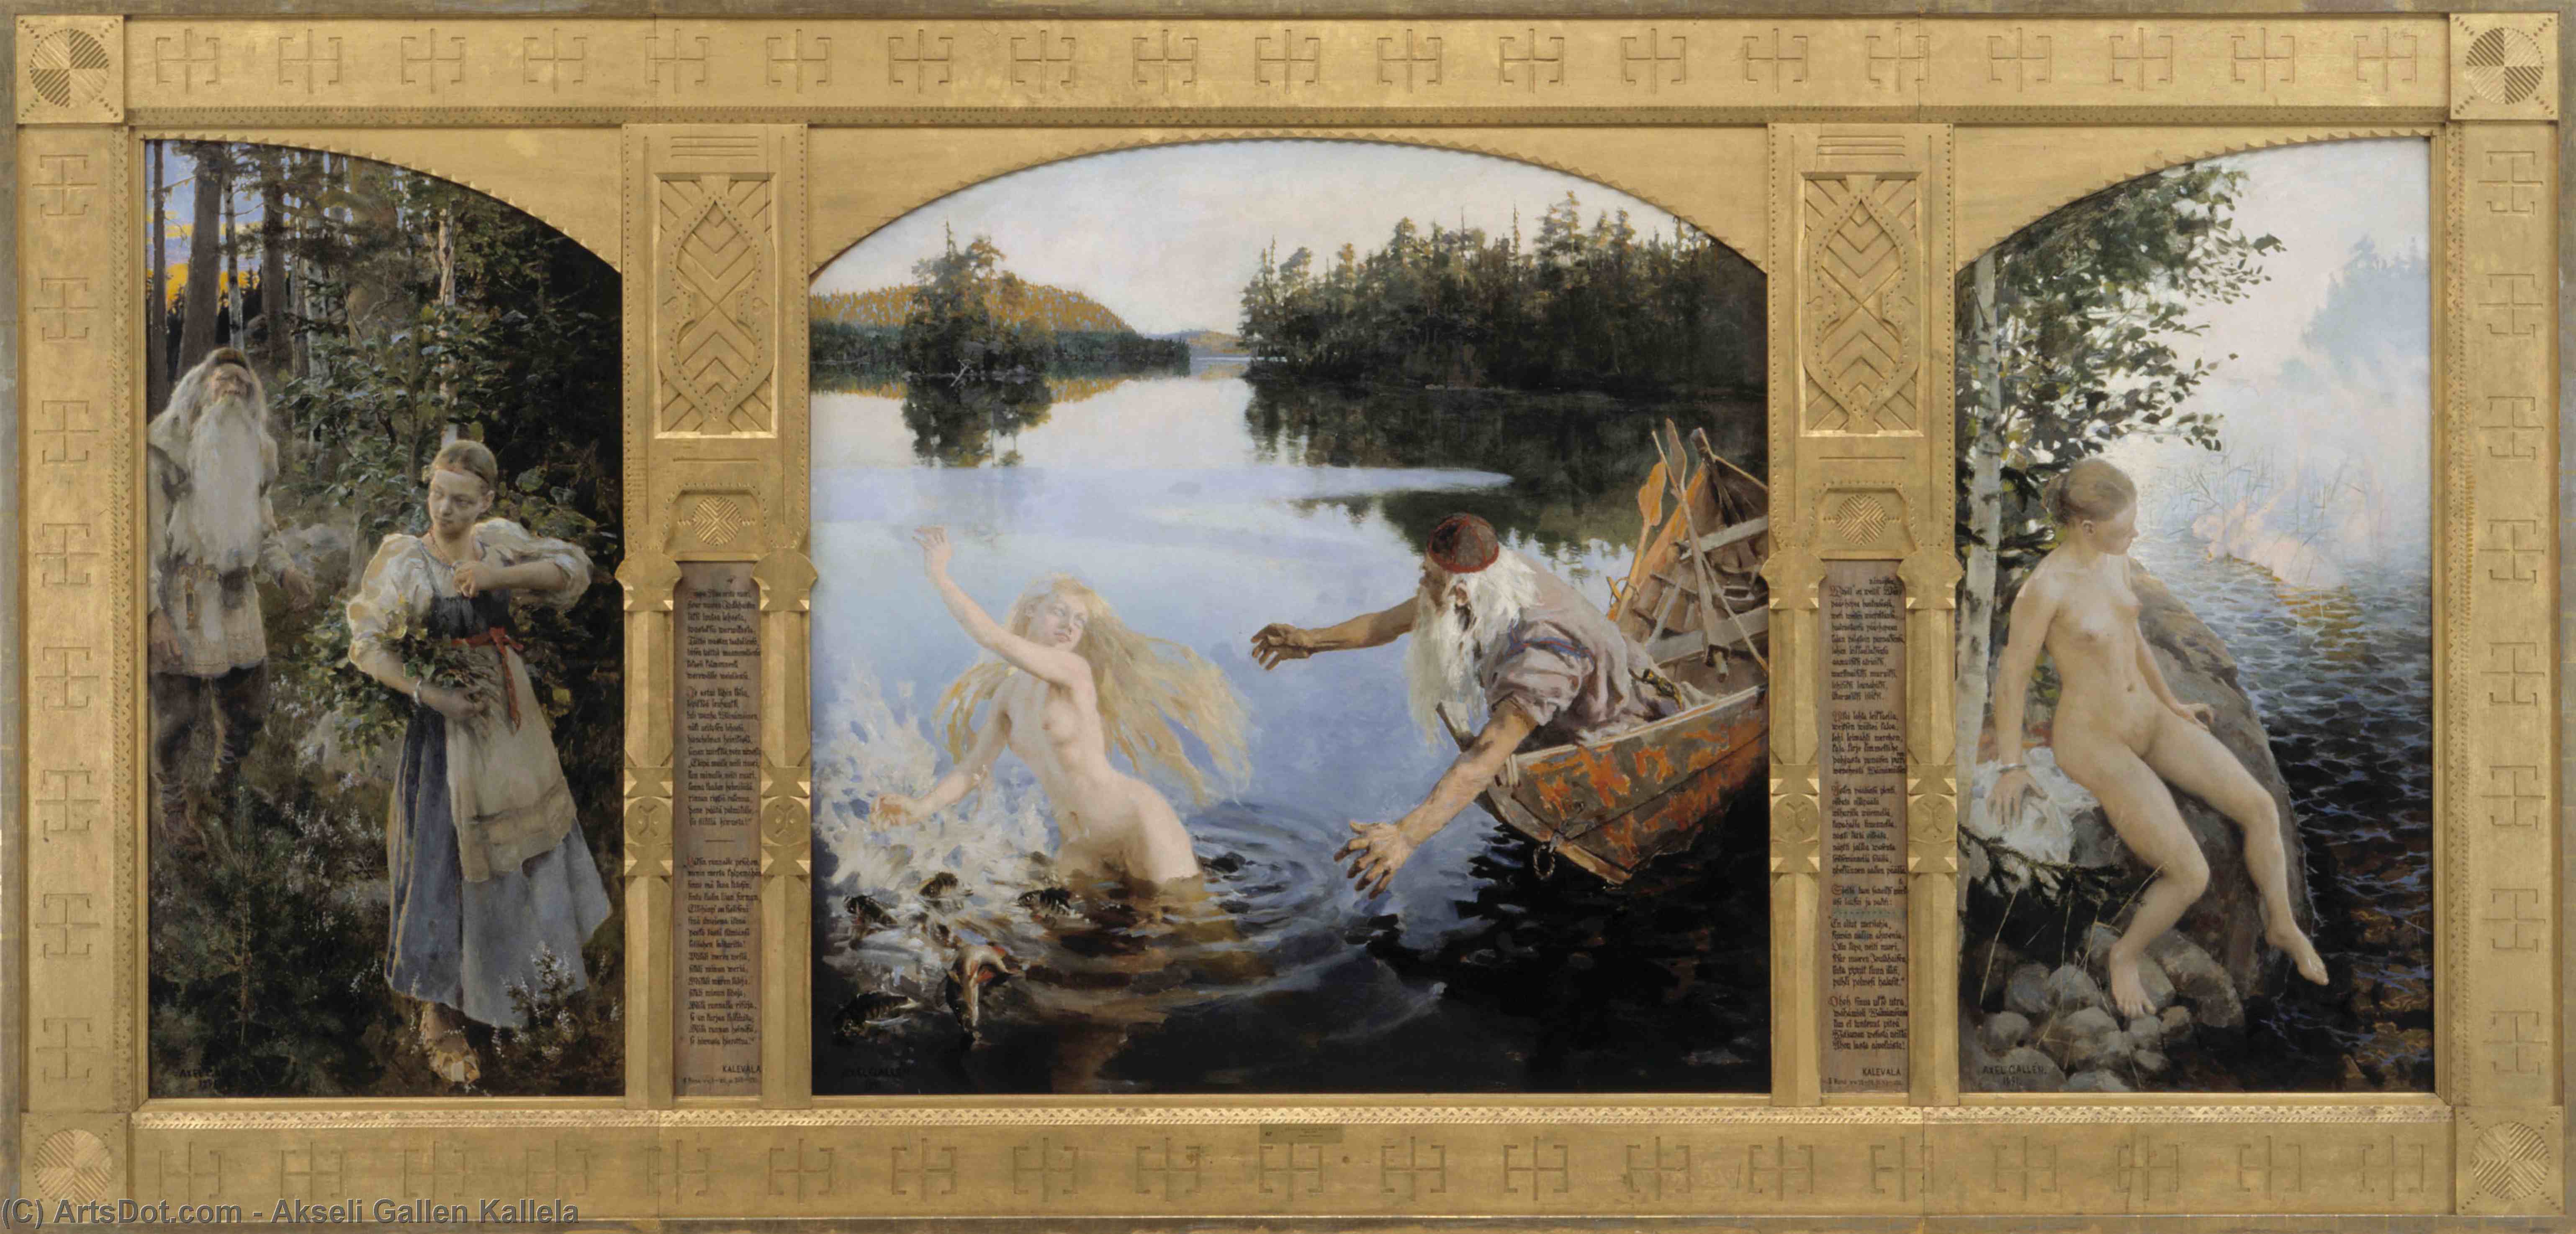 WikiOO.org - Encyclopedia of Fine Arts - Målning, konstverk Akseli Gallen Kallela - Aino Myth, Triptych